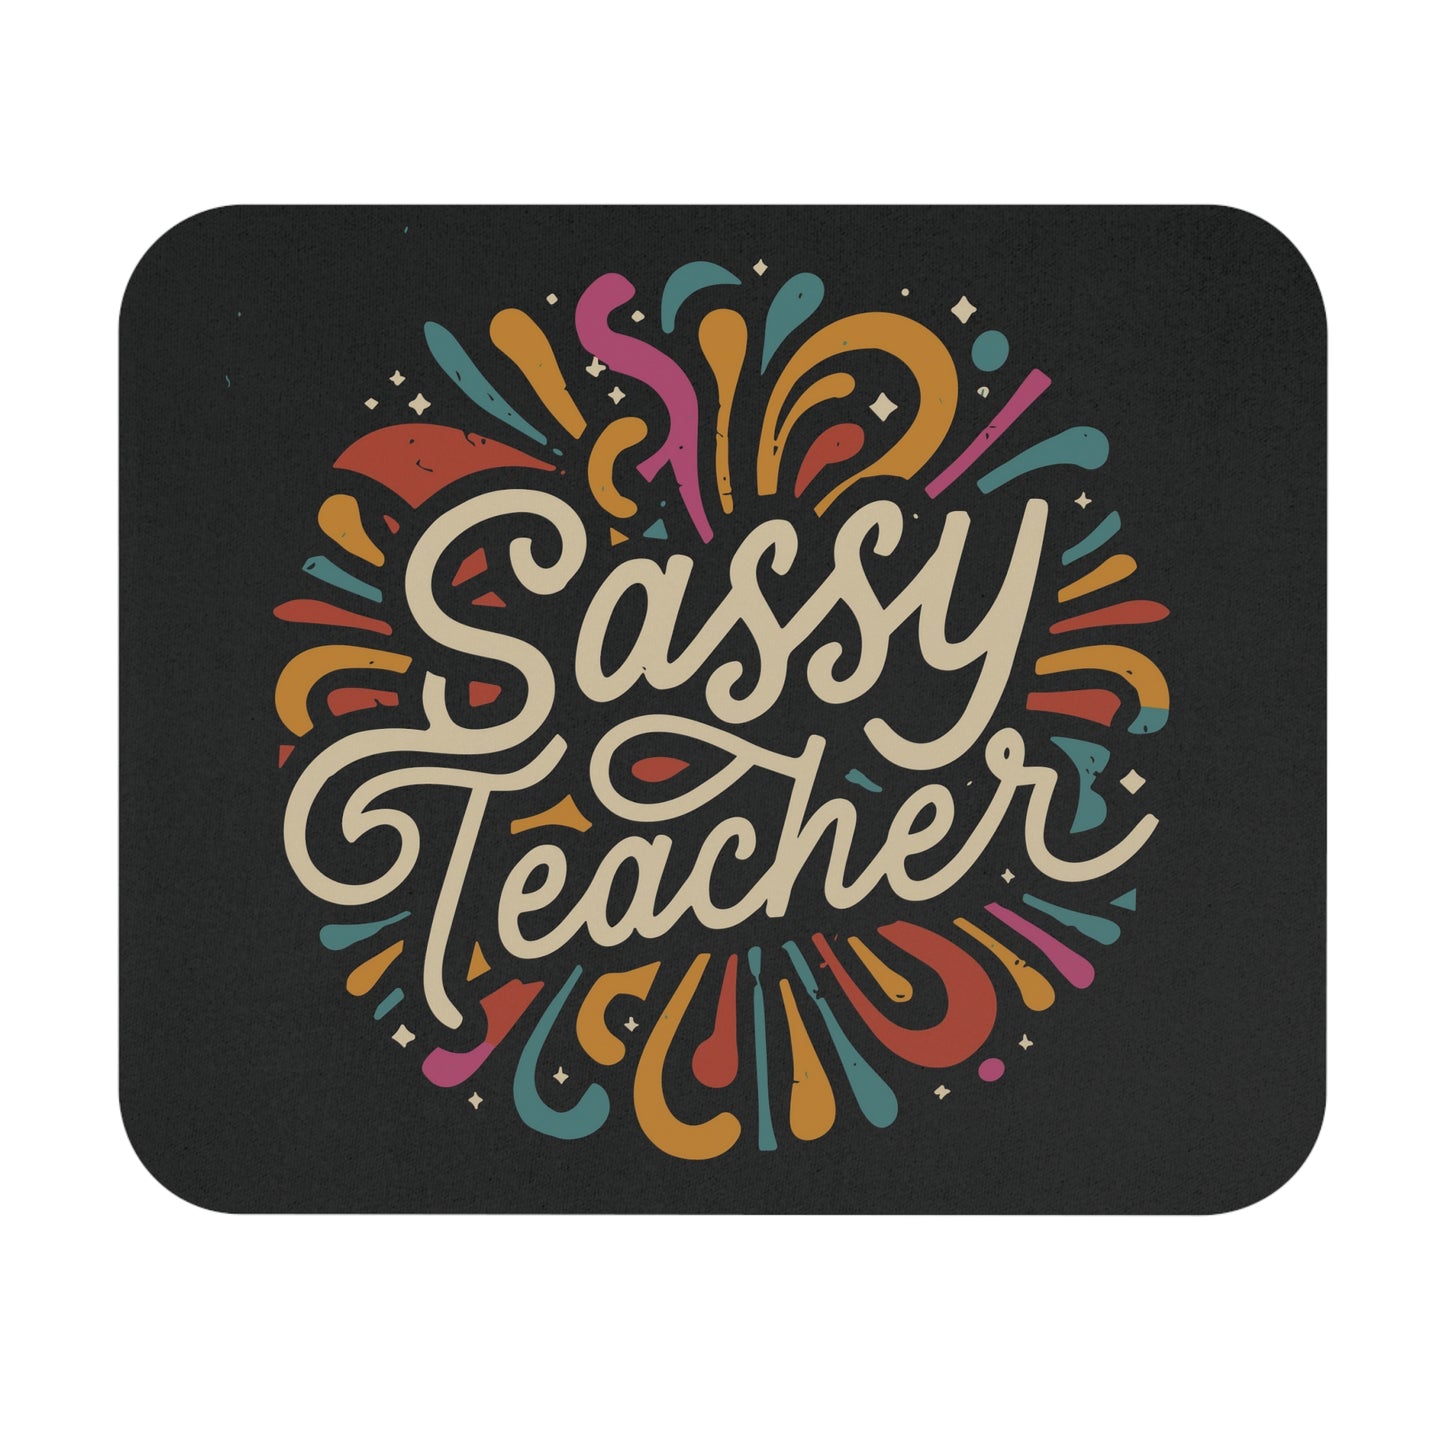 Teacher Mouse Pad - "Sassy Teacher"